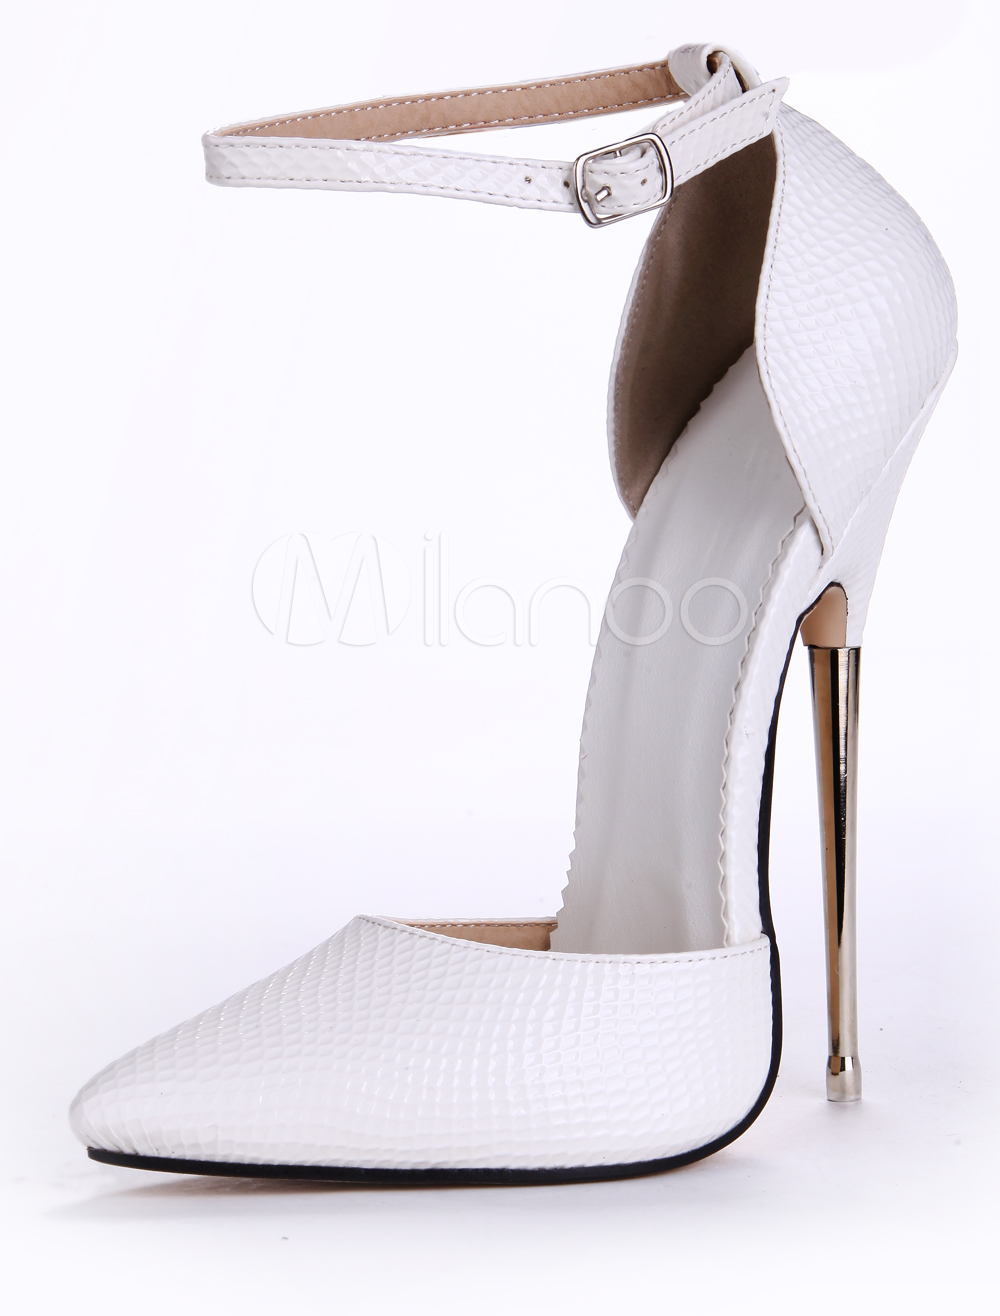 3 inch white heels